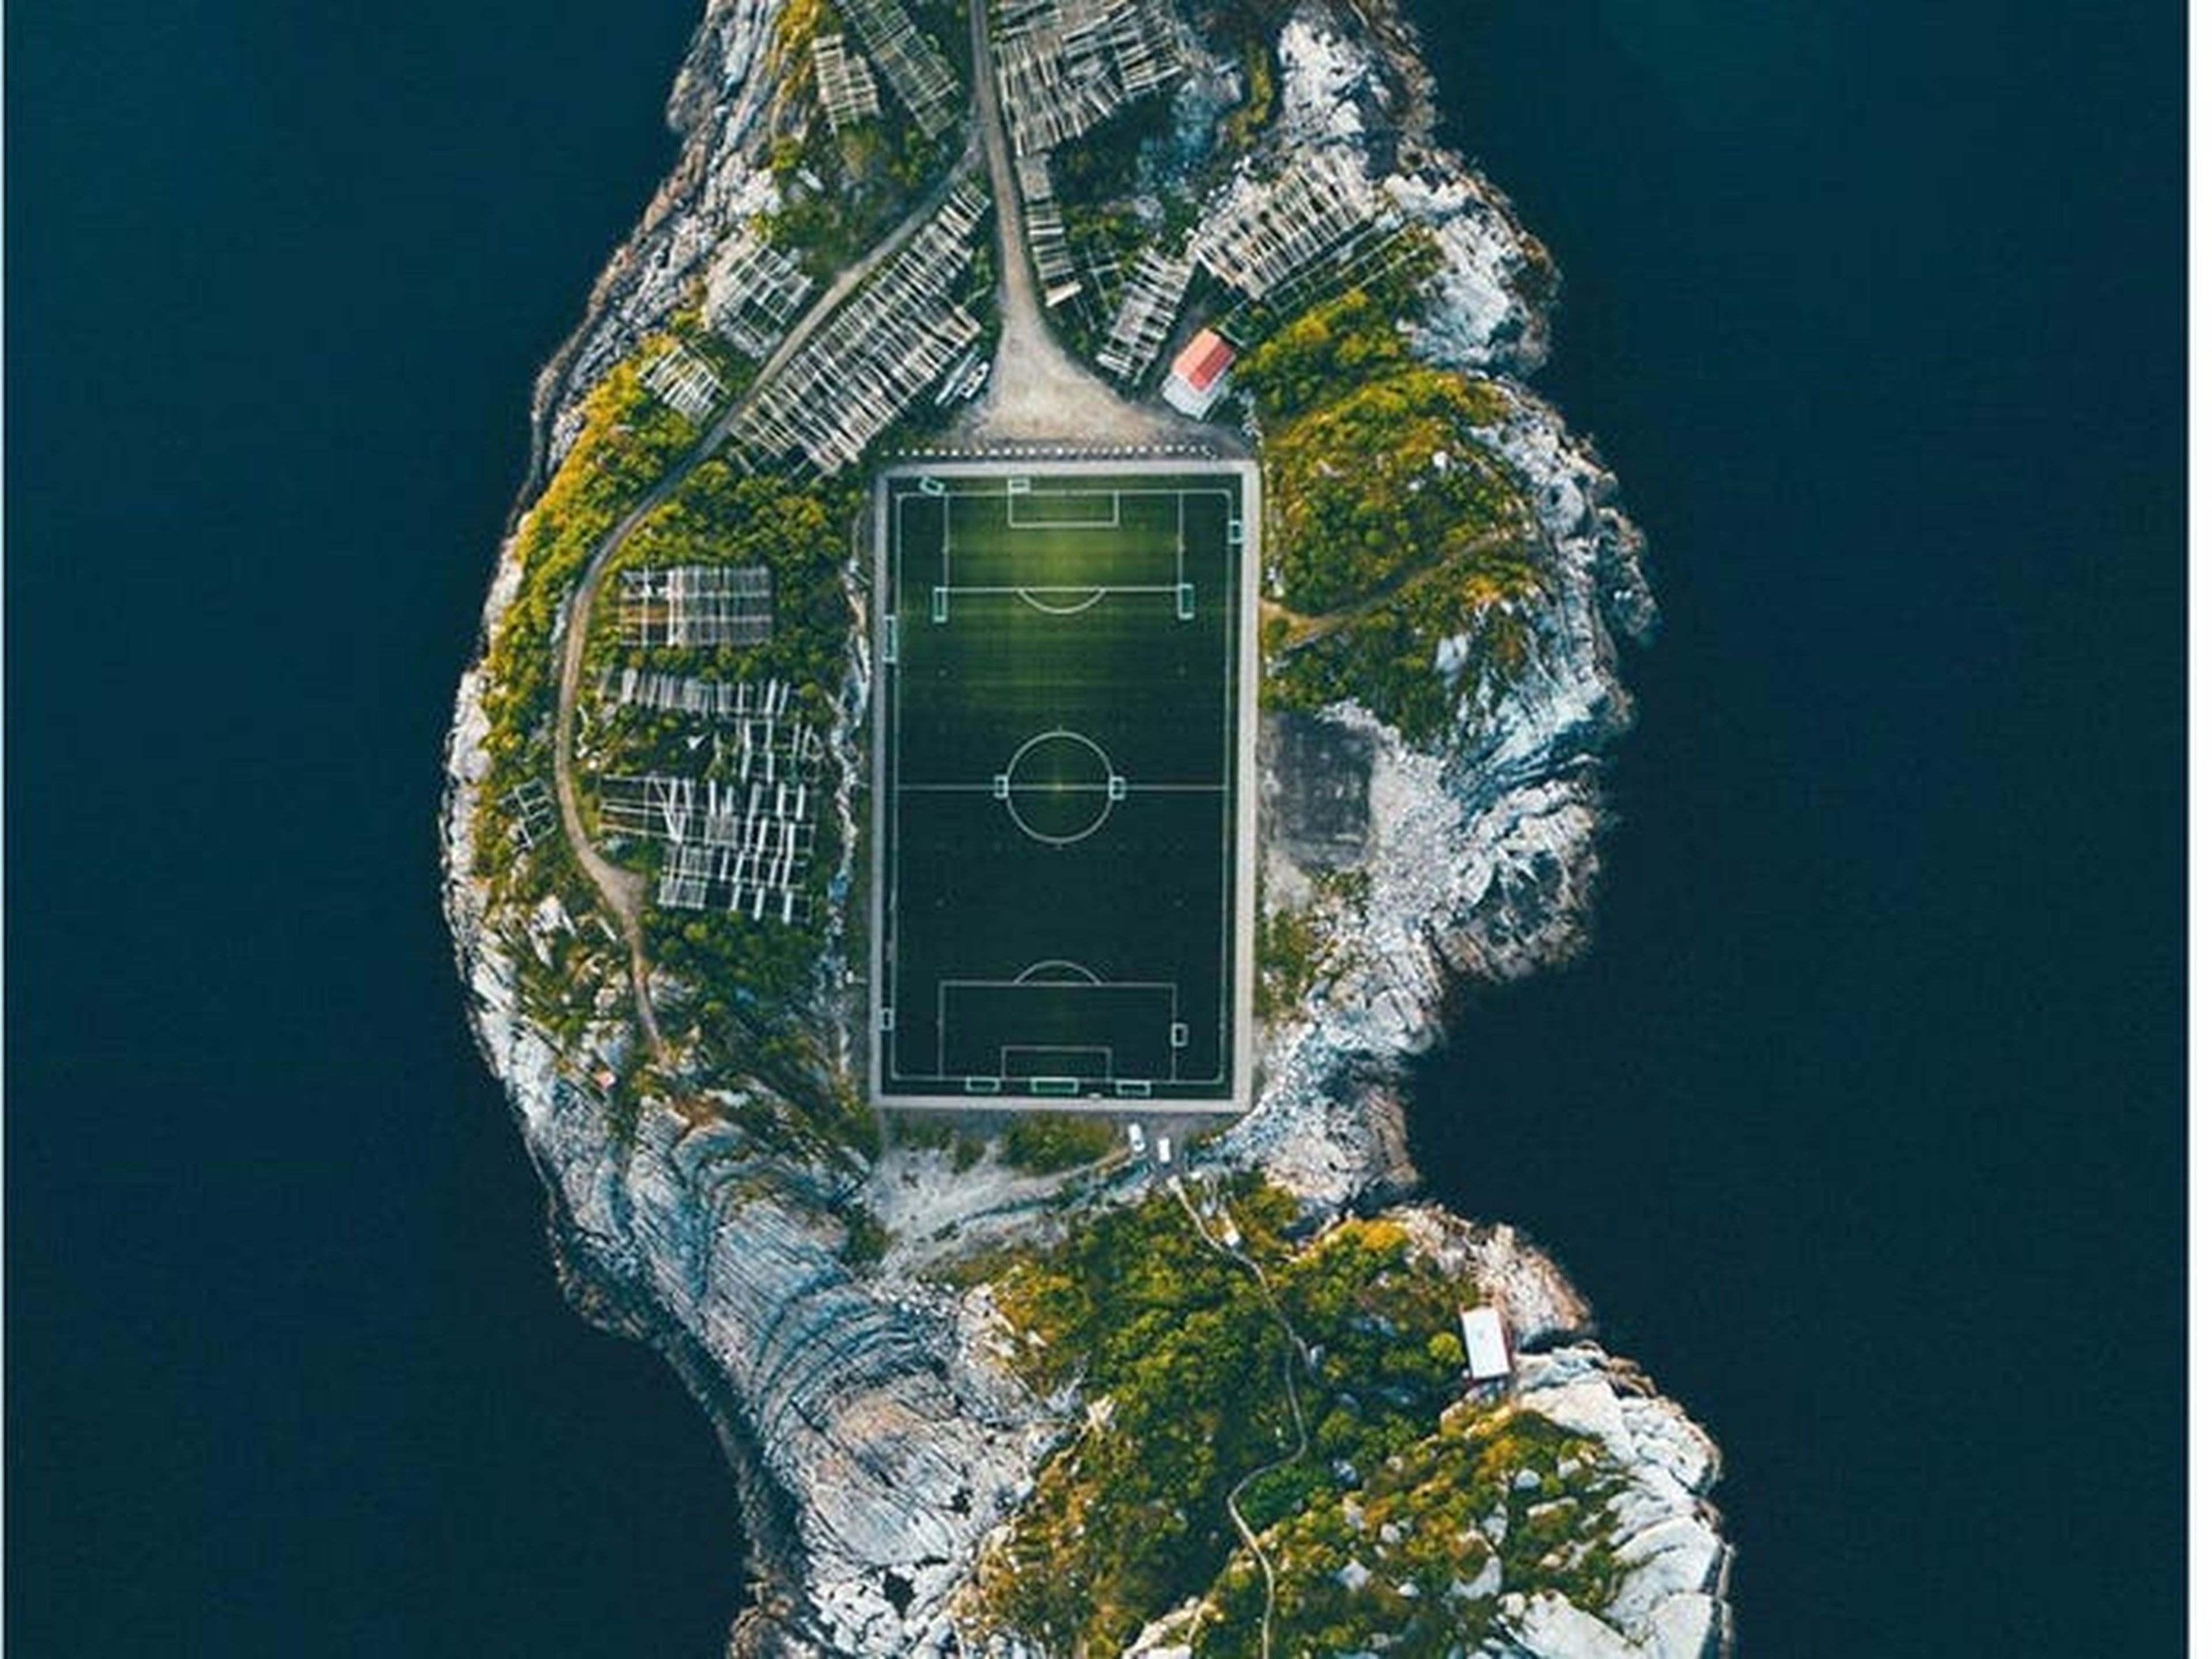 En esta vista aérea de Henningsvær, una isla frente a la costa de Noruega, destaca su campo de fútbol.